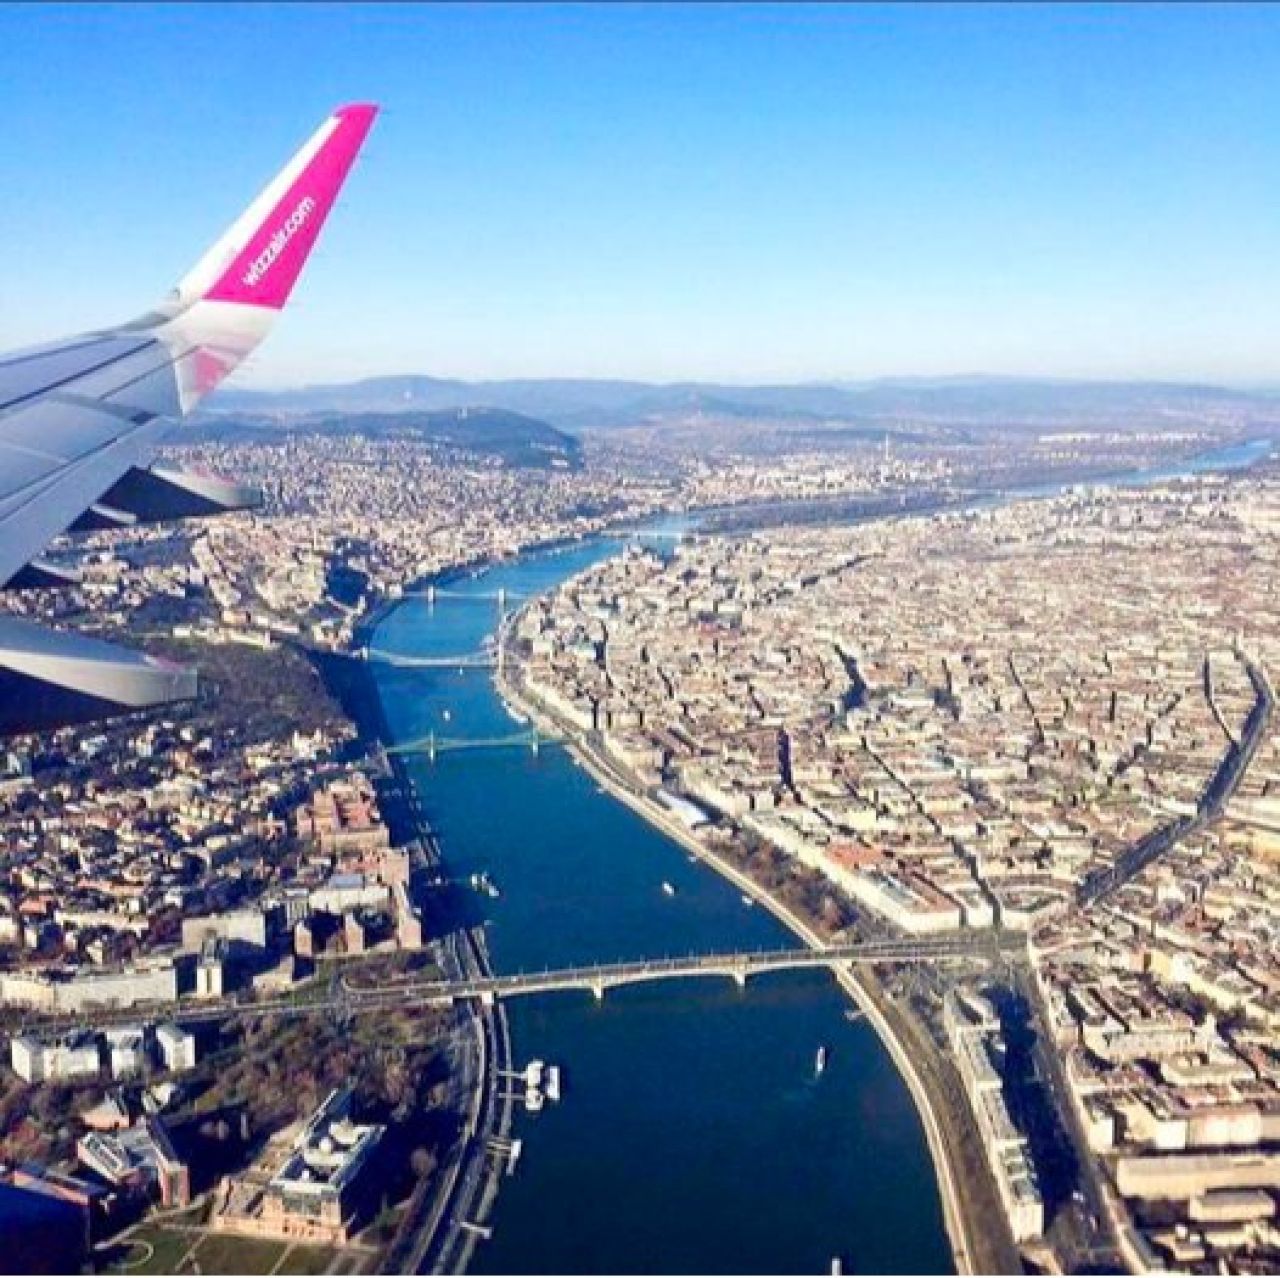 Մեկնարկել են Wizz Air ավիաընկերության Բուդապեշտ-Երևան- Բուդապեշտ երթուղով չվերթերը